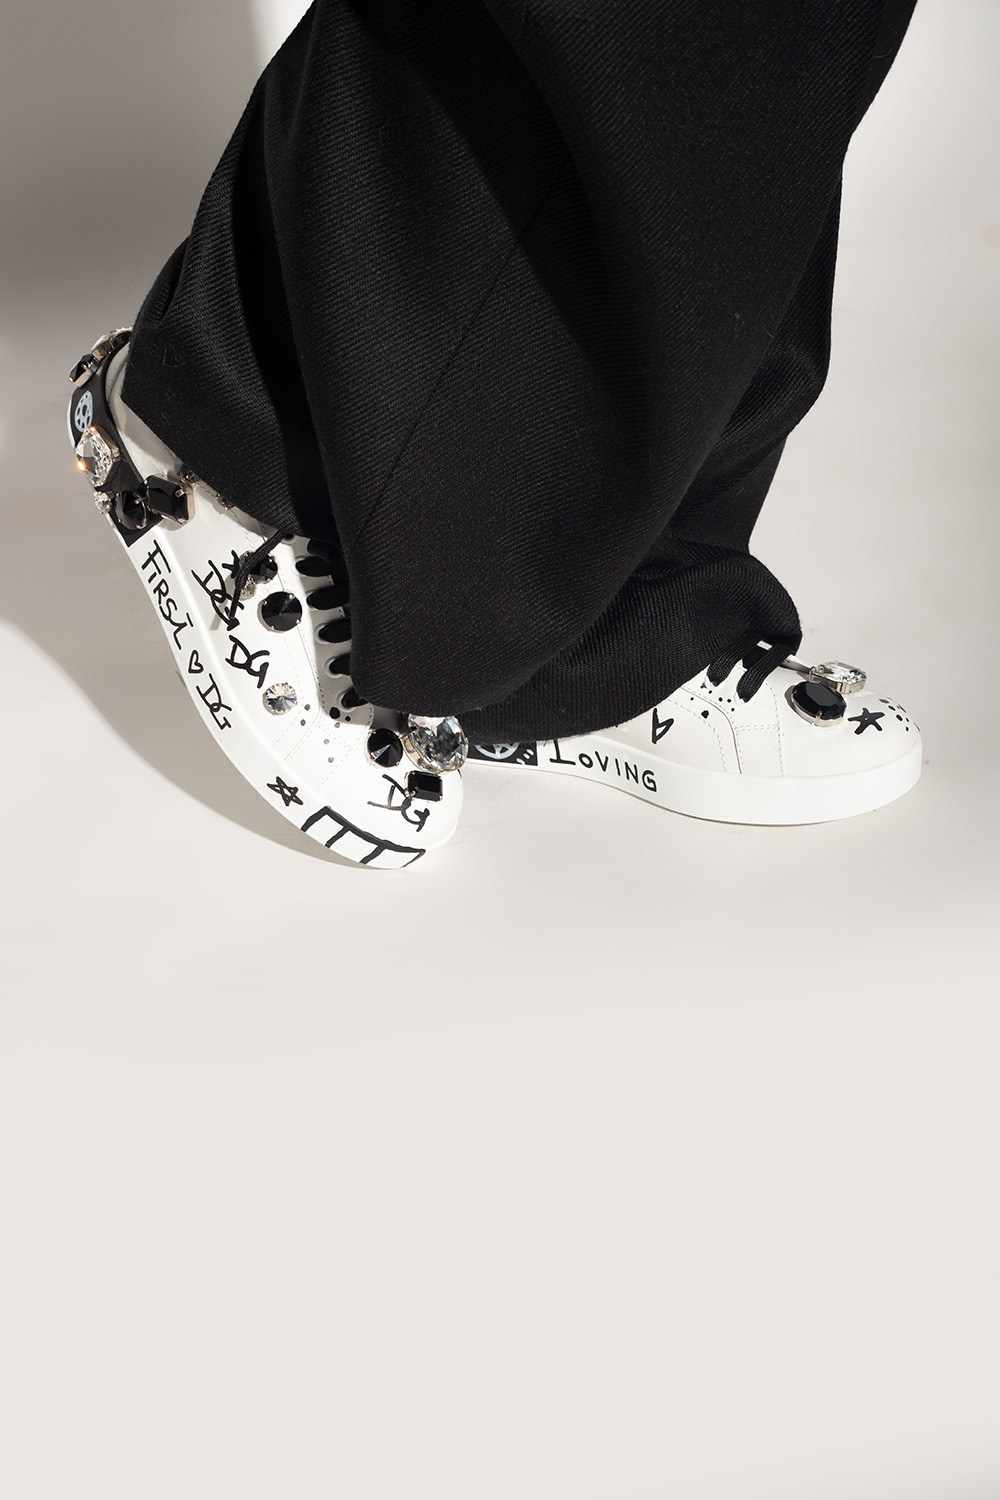 dolce tag & Gabbana ‘Portofino’ sneakers